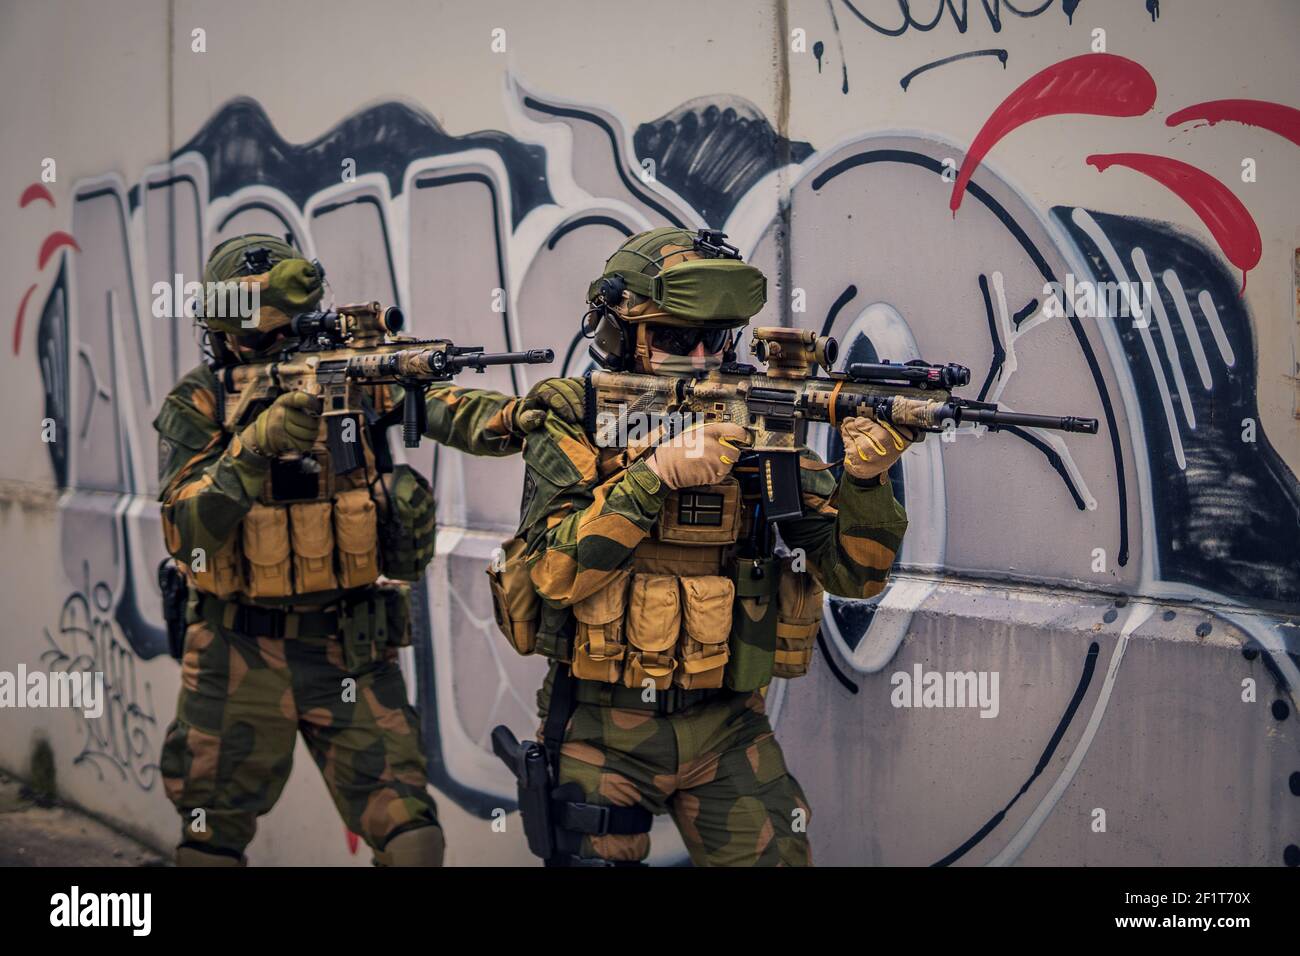 Le forze speciali soldati che effettuano un'operazione usando armi e dispositivi tattici Foto Stock